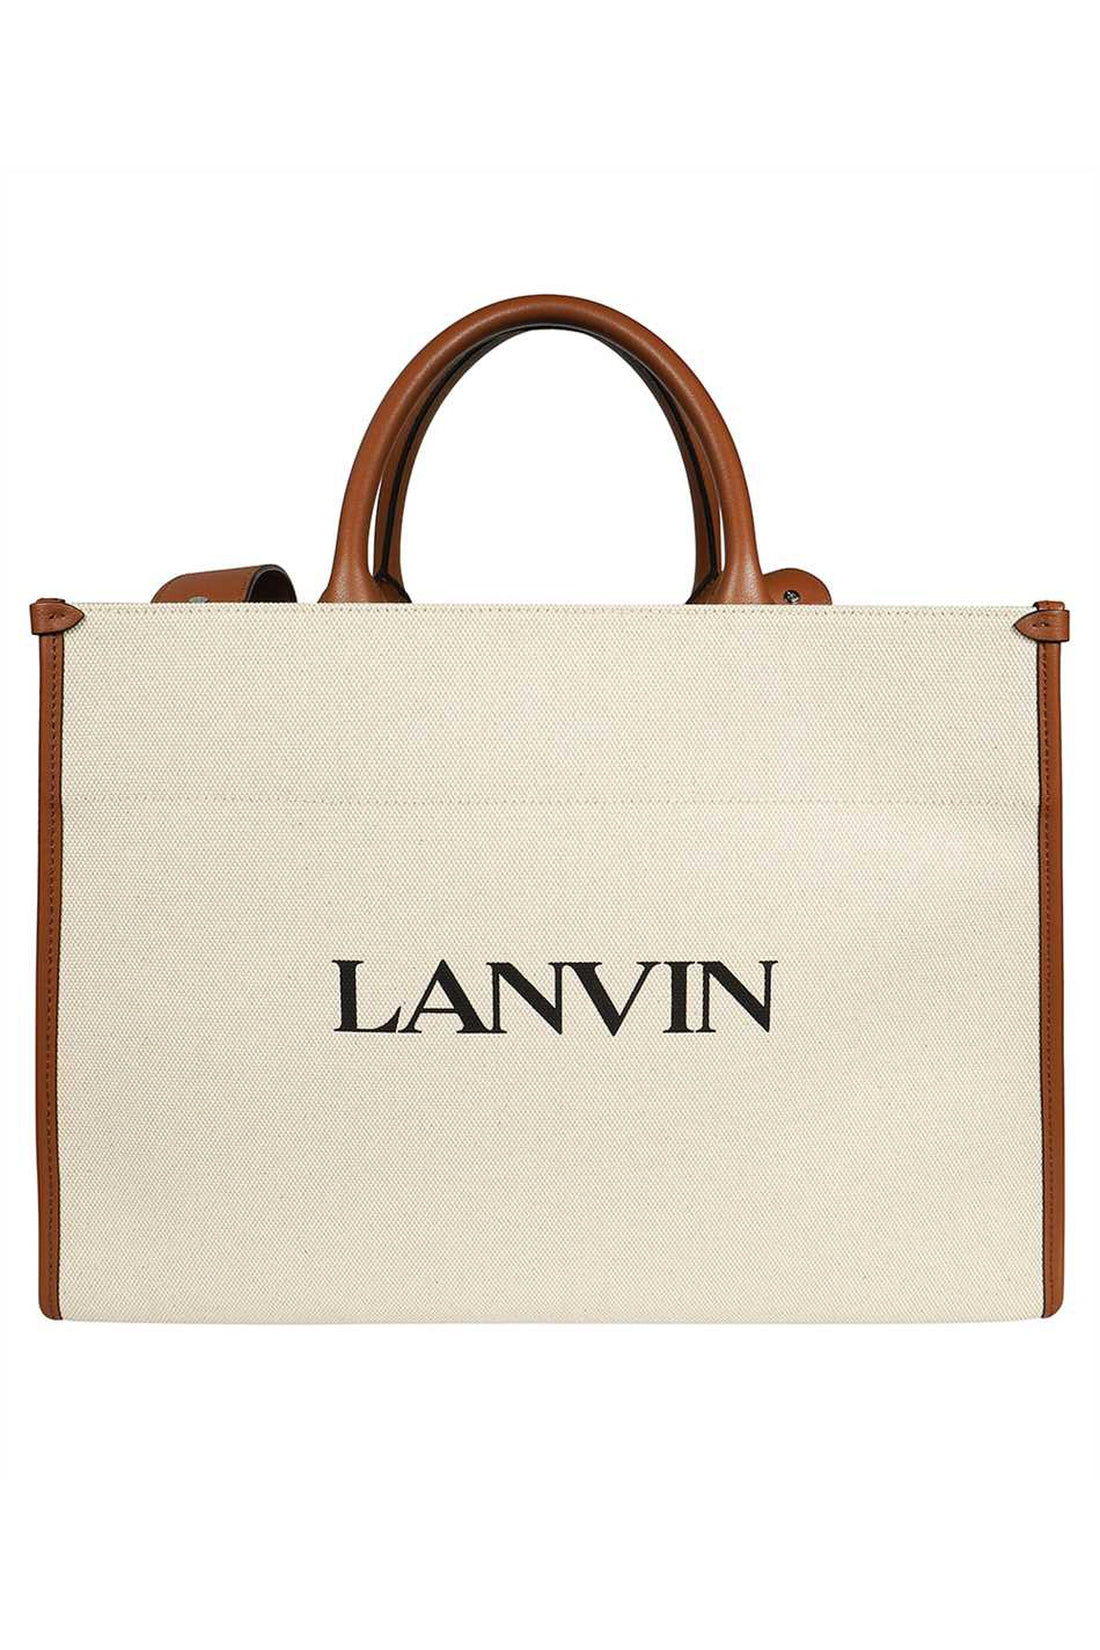 Lanvin-OUTLET-SALE-Canvas tote bag-ARCHIVIST